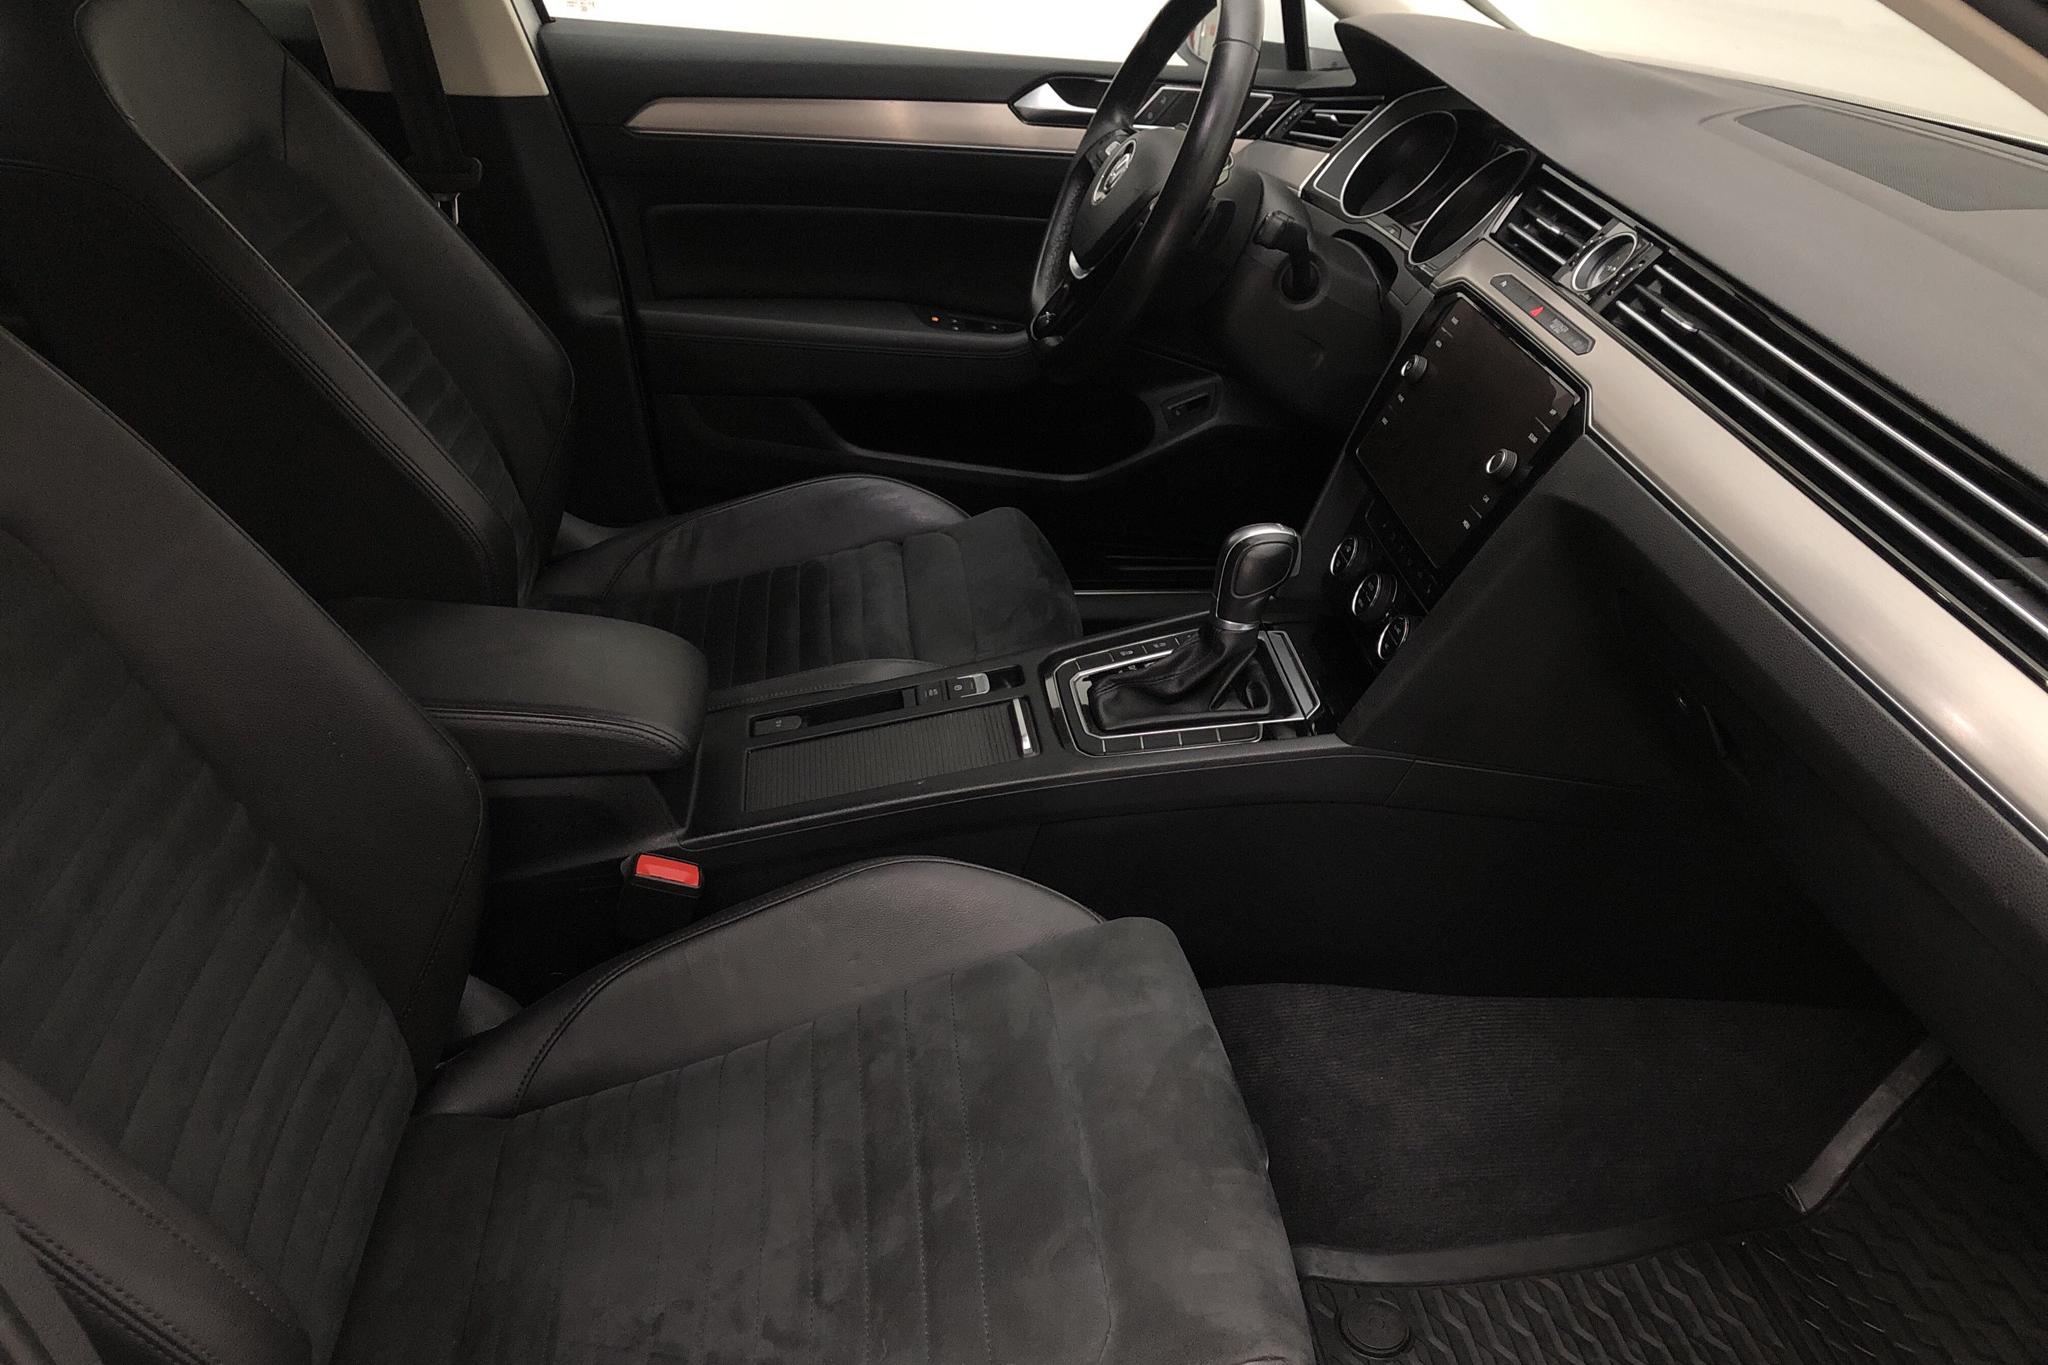 VW Passat 2.0 TDI Sportscombi (190hk) - 14 732 mil - Automat - vit - 2018